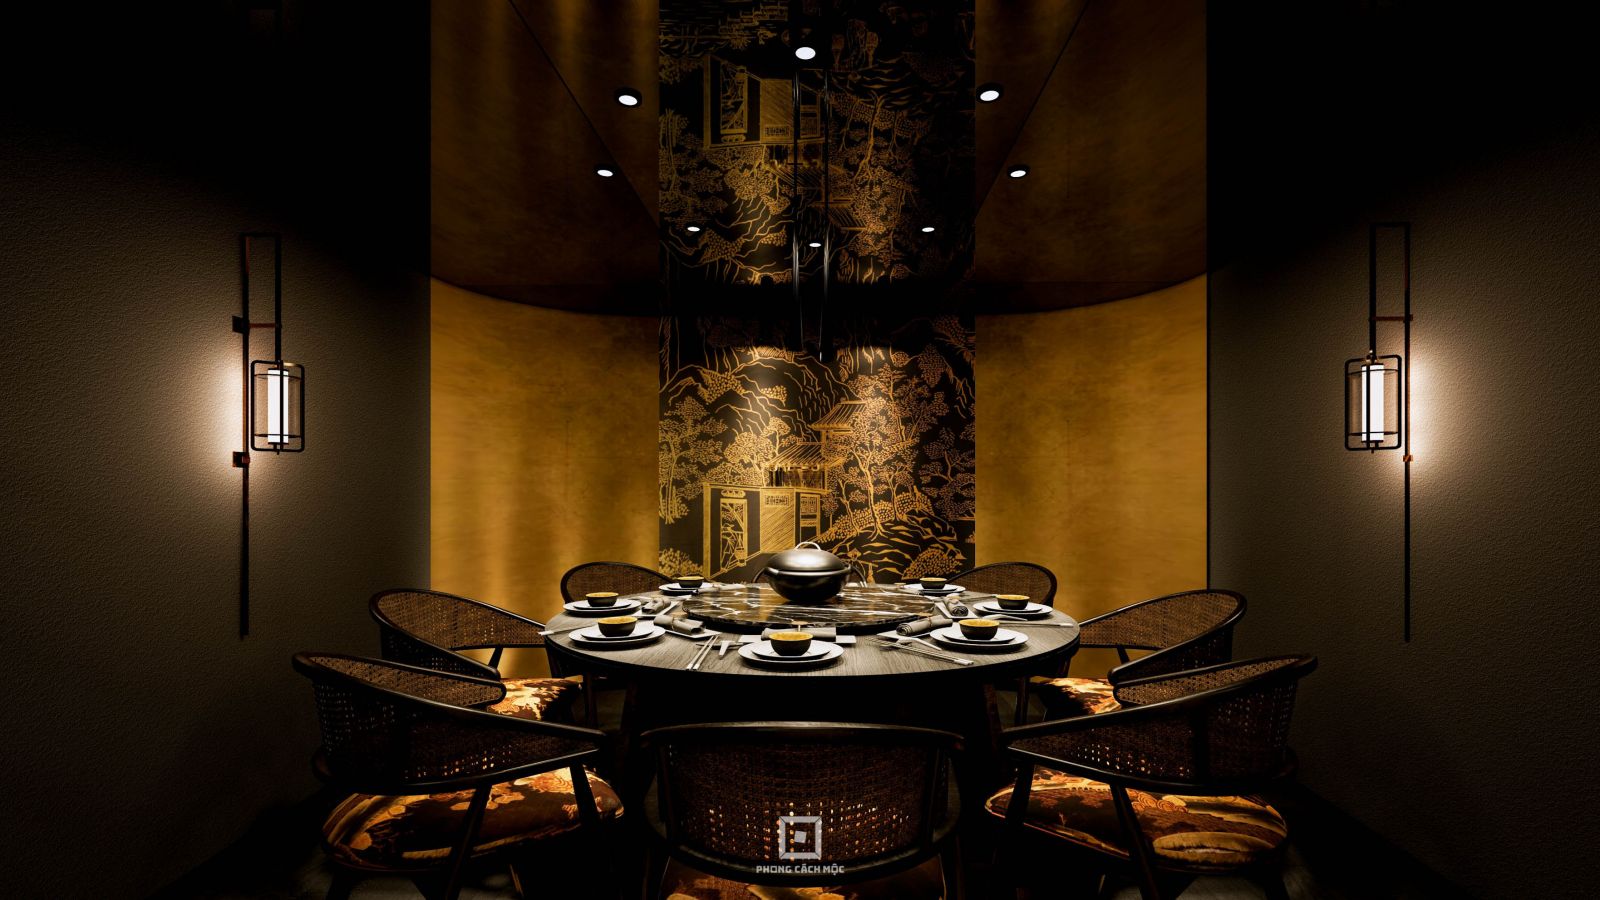 Mỗi phòng VIP nhà hàng mang một ngôn ngữ thiết kế riêng biệt. Cảm hứng Trung Hoa được biến tấu ở nhiều góc độ thẩm mỹ khác nhau.